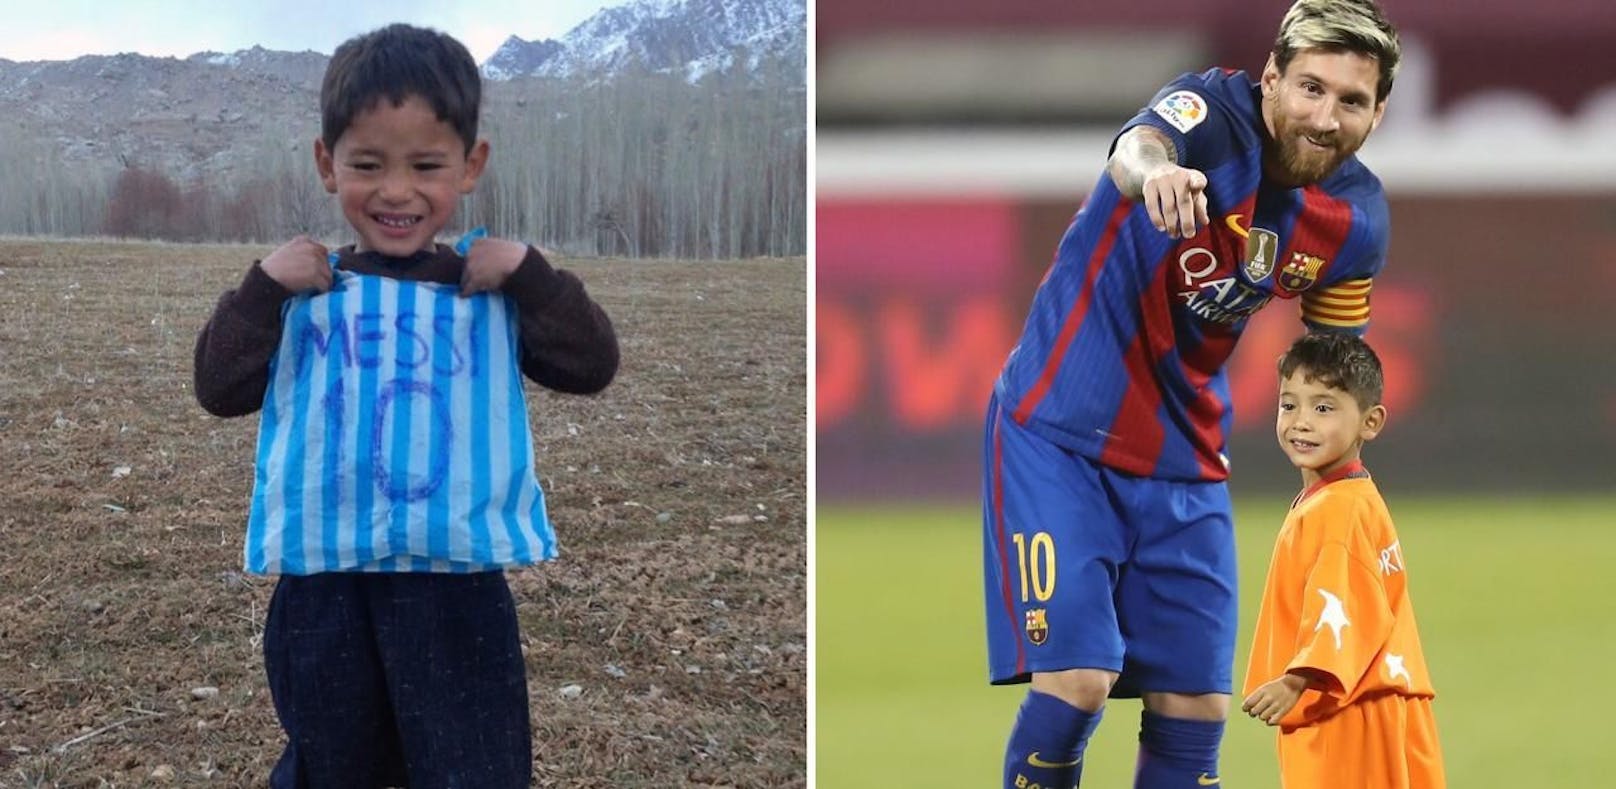 Der Traum des "kleinen Messi" wird zum Albtraum